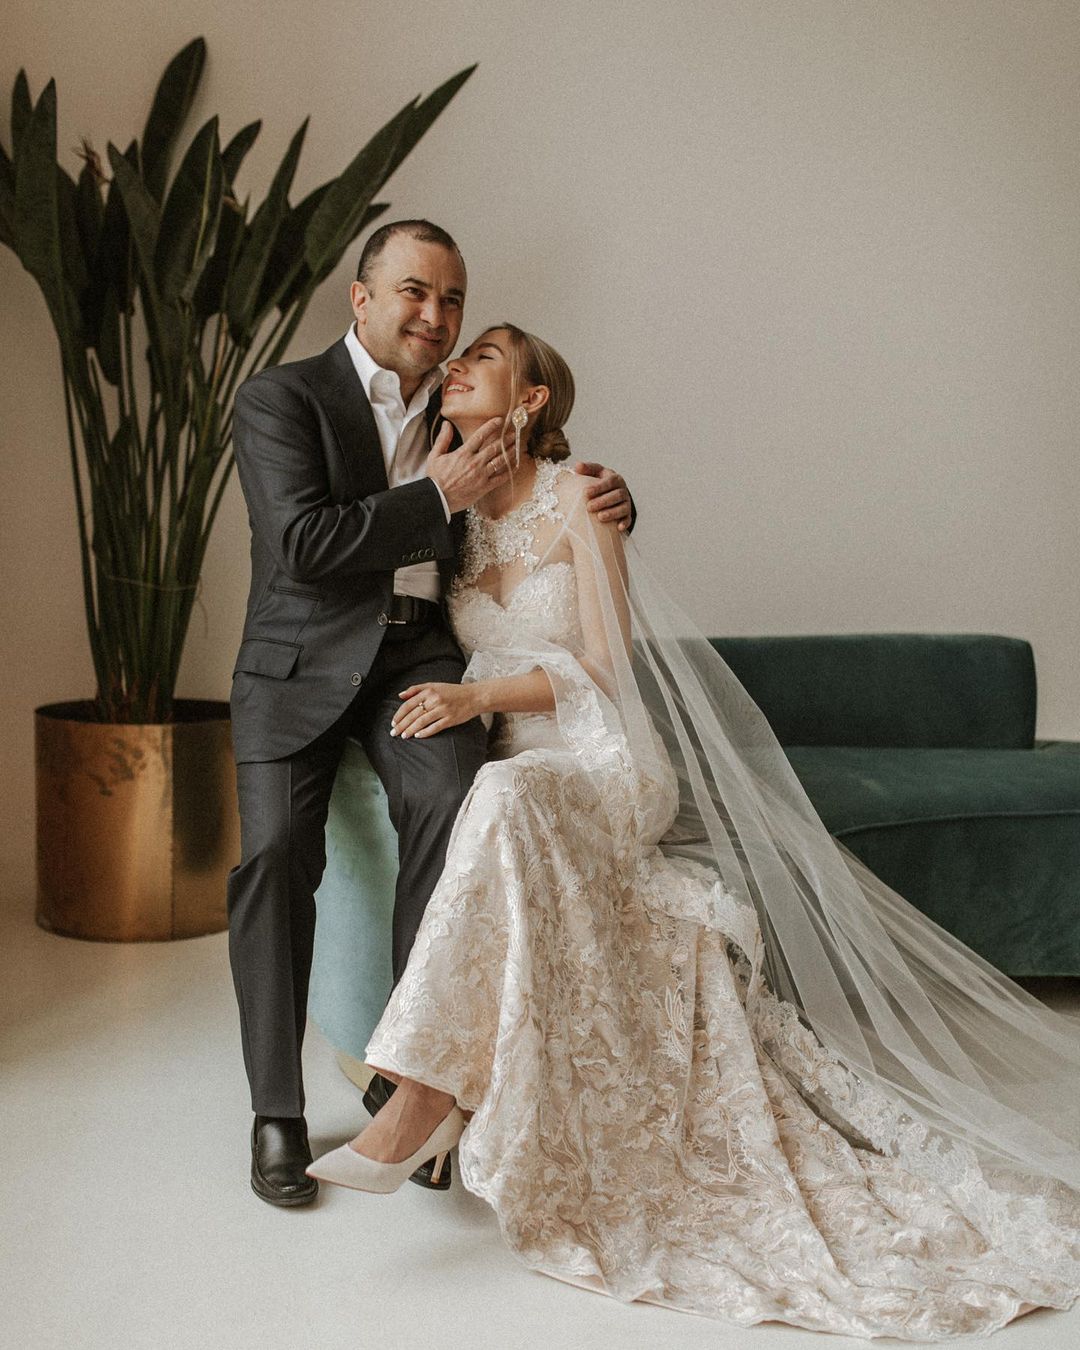 катерина репяхова виктор павлик свадьба свадебное платье белое длинное украинские звезды в чем выходят замуж